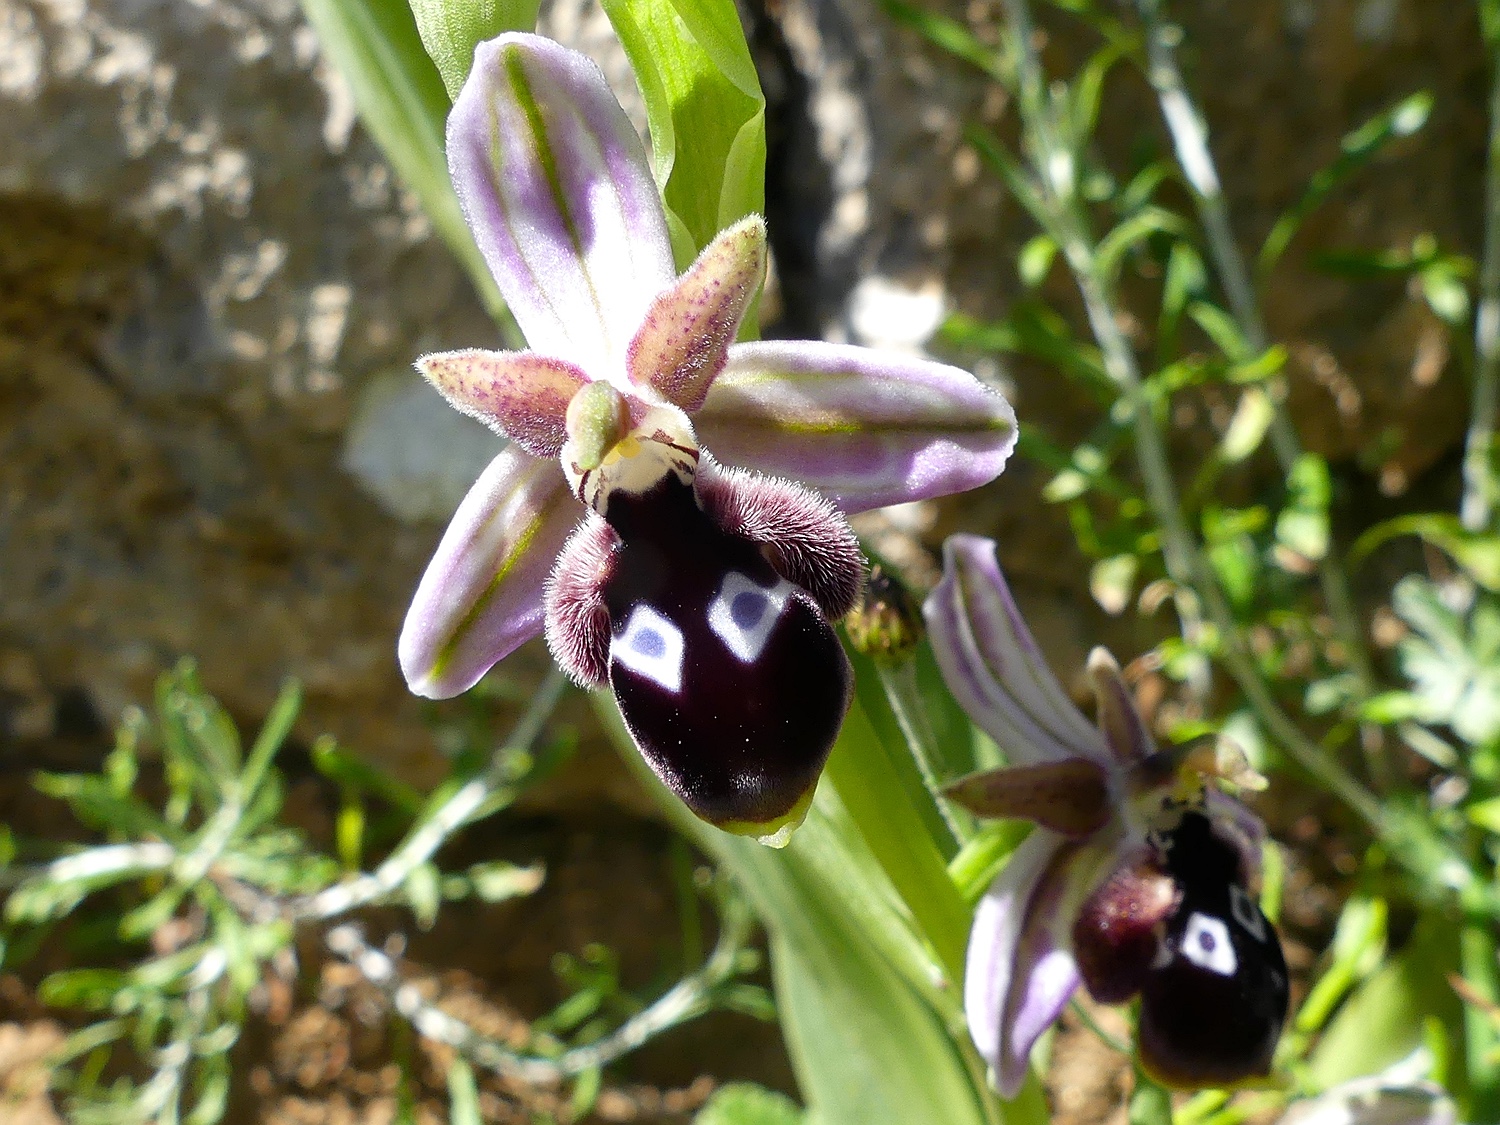 Reinholds Ragwurz, Ophrys reinholdii